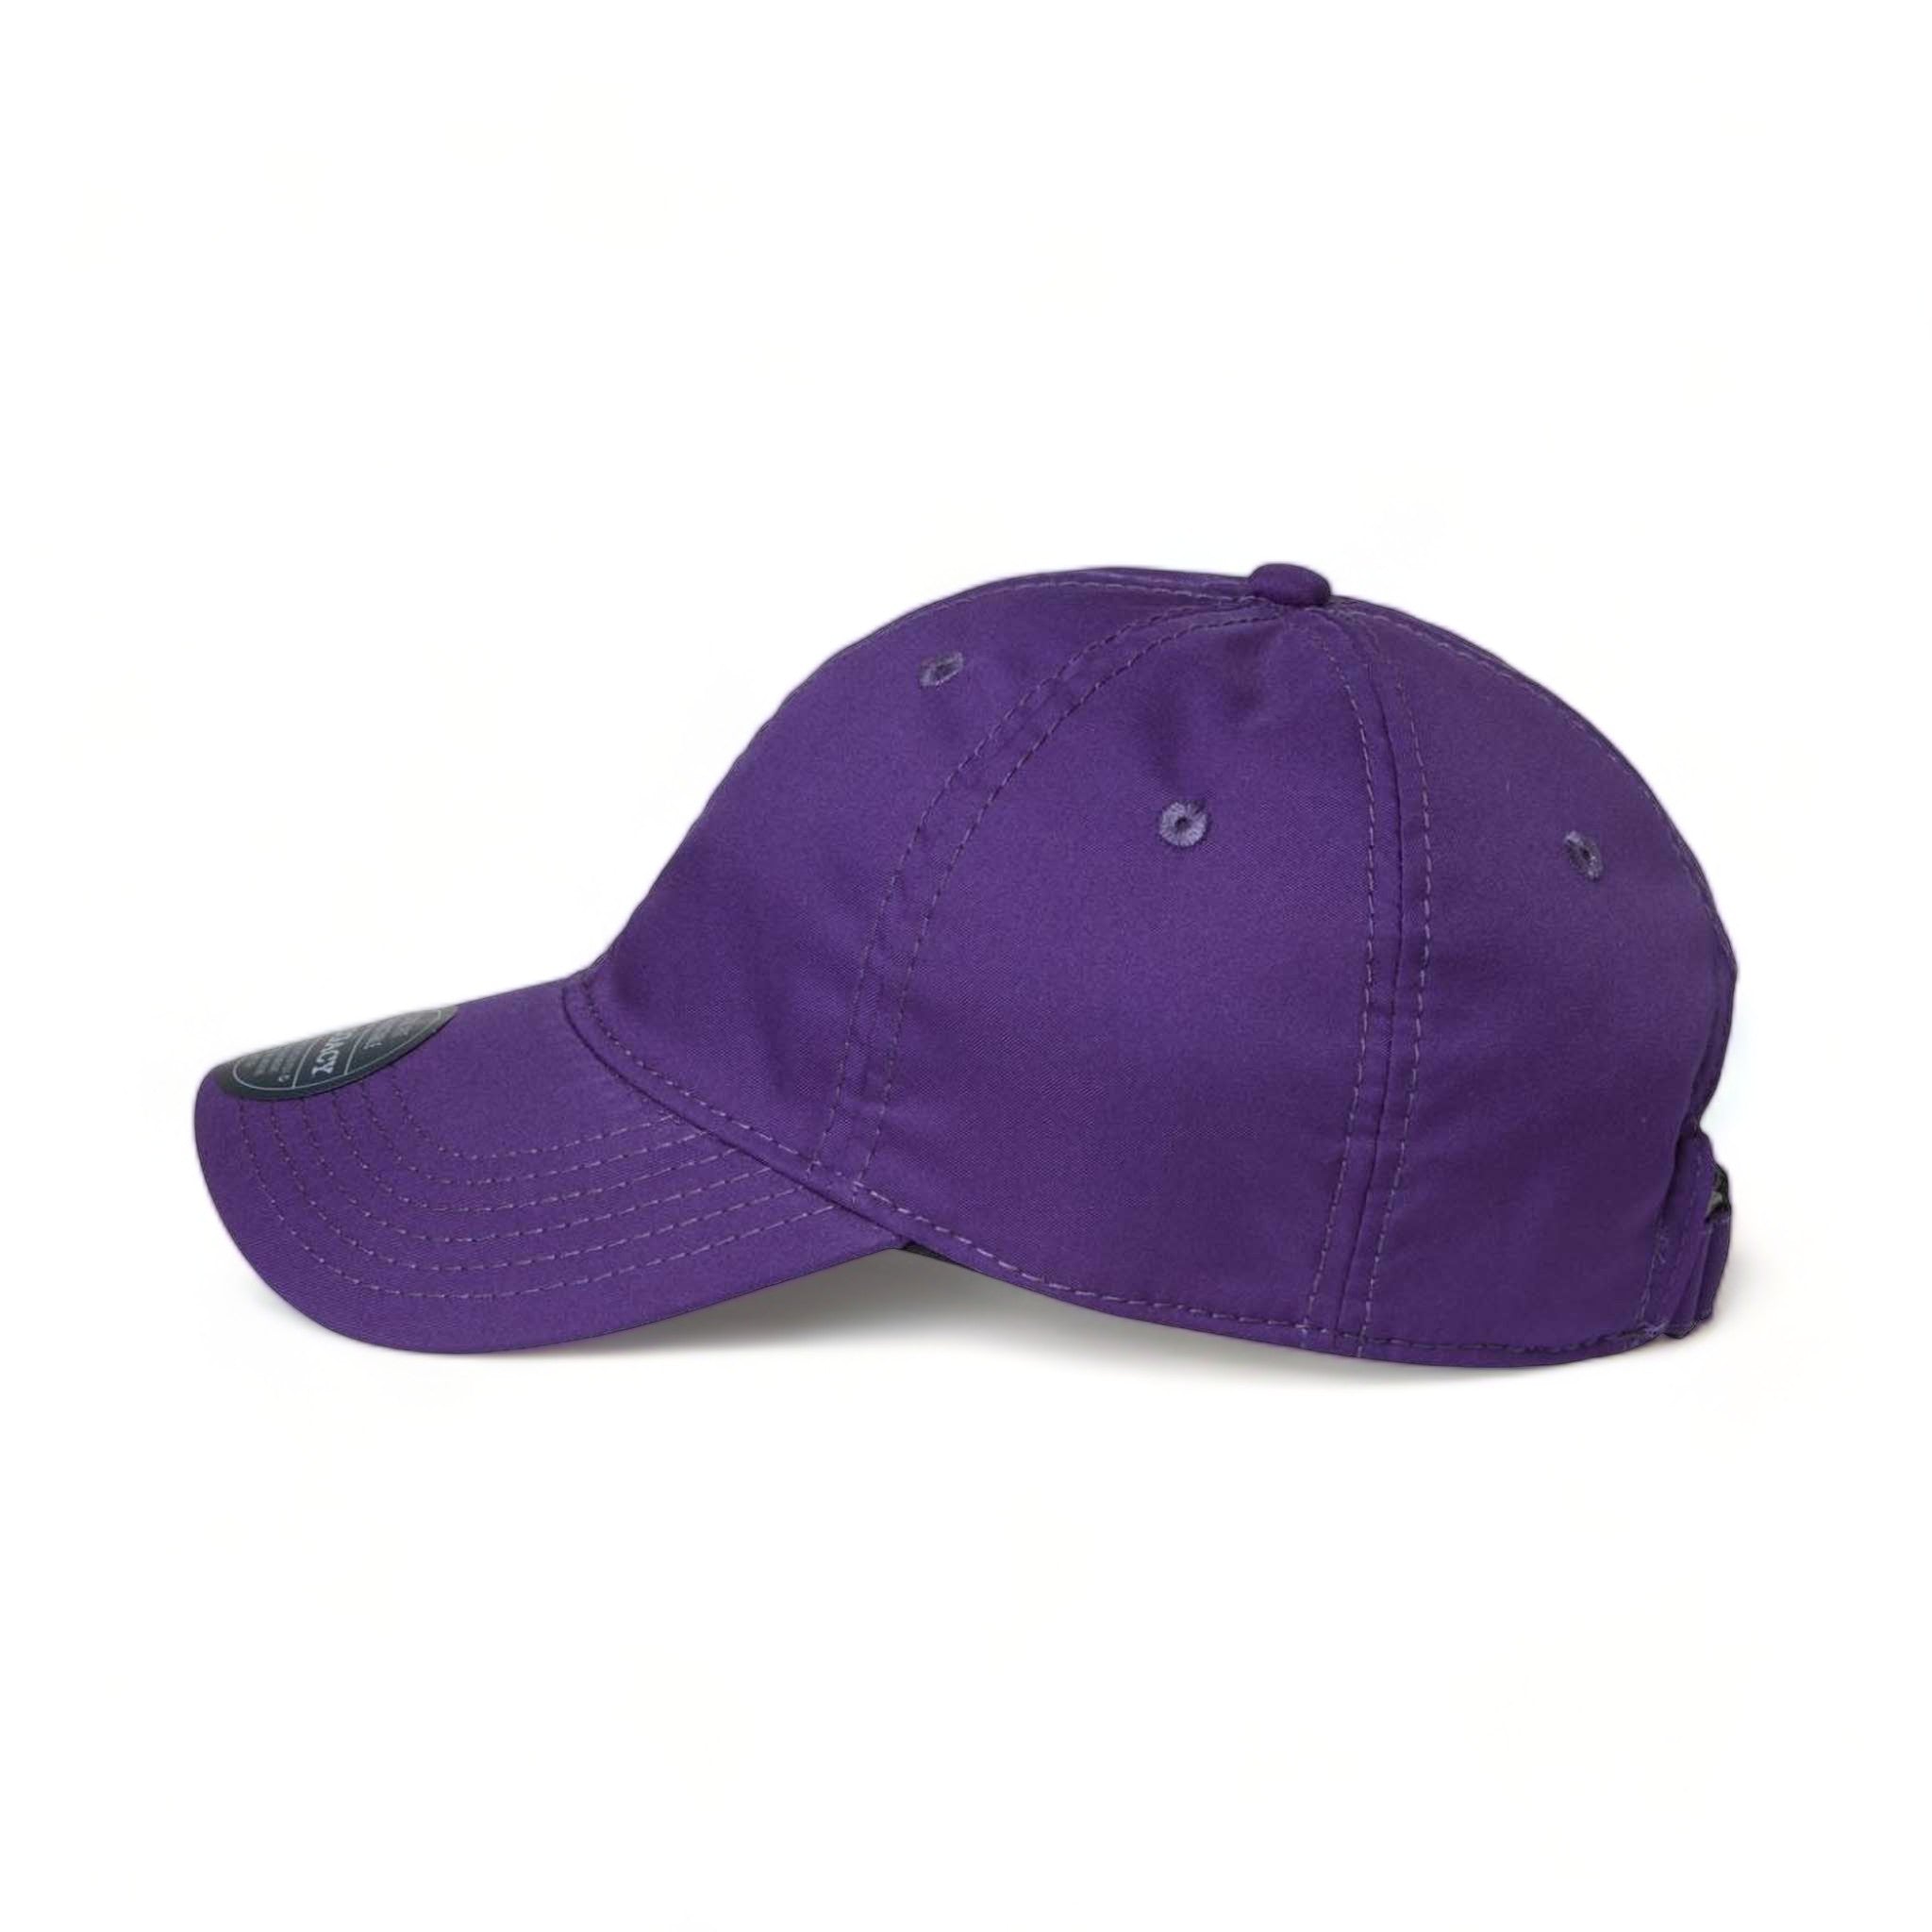 Side view of LEGACY CFA custom hat in purple